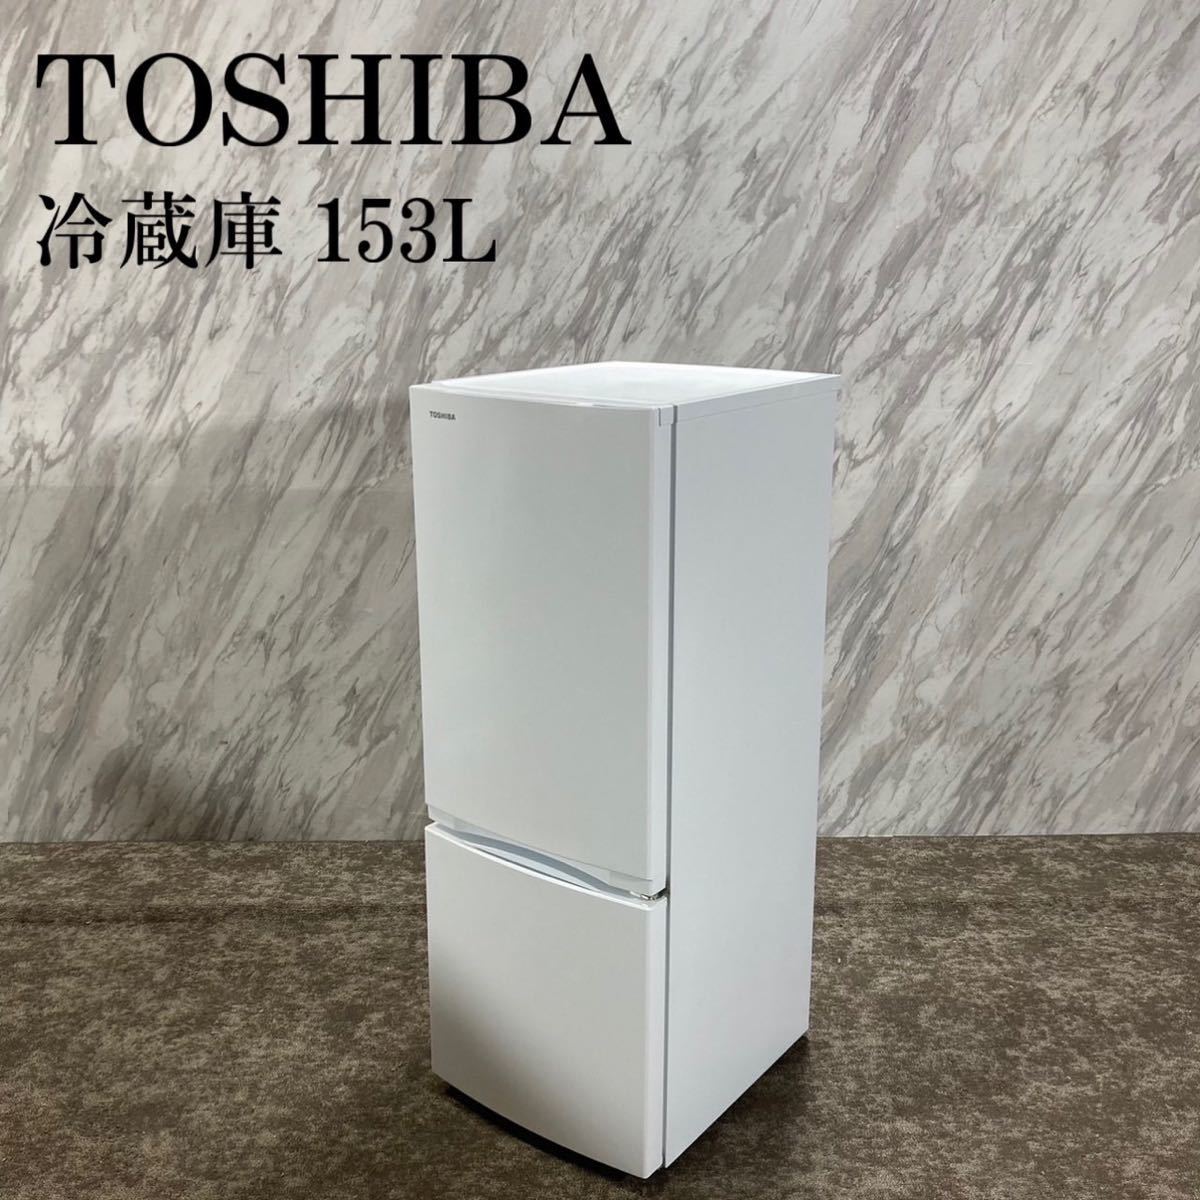 TOSHIBA 東芝 冷蔵庫 GR-T15BS (W) 153L I598-